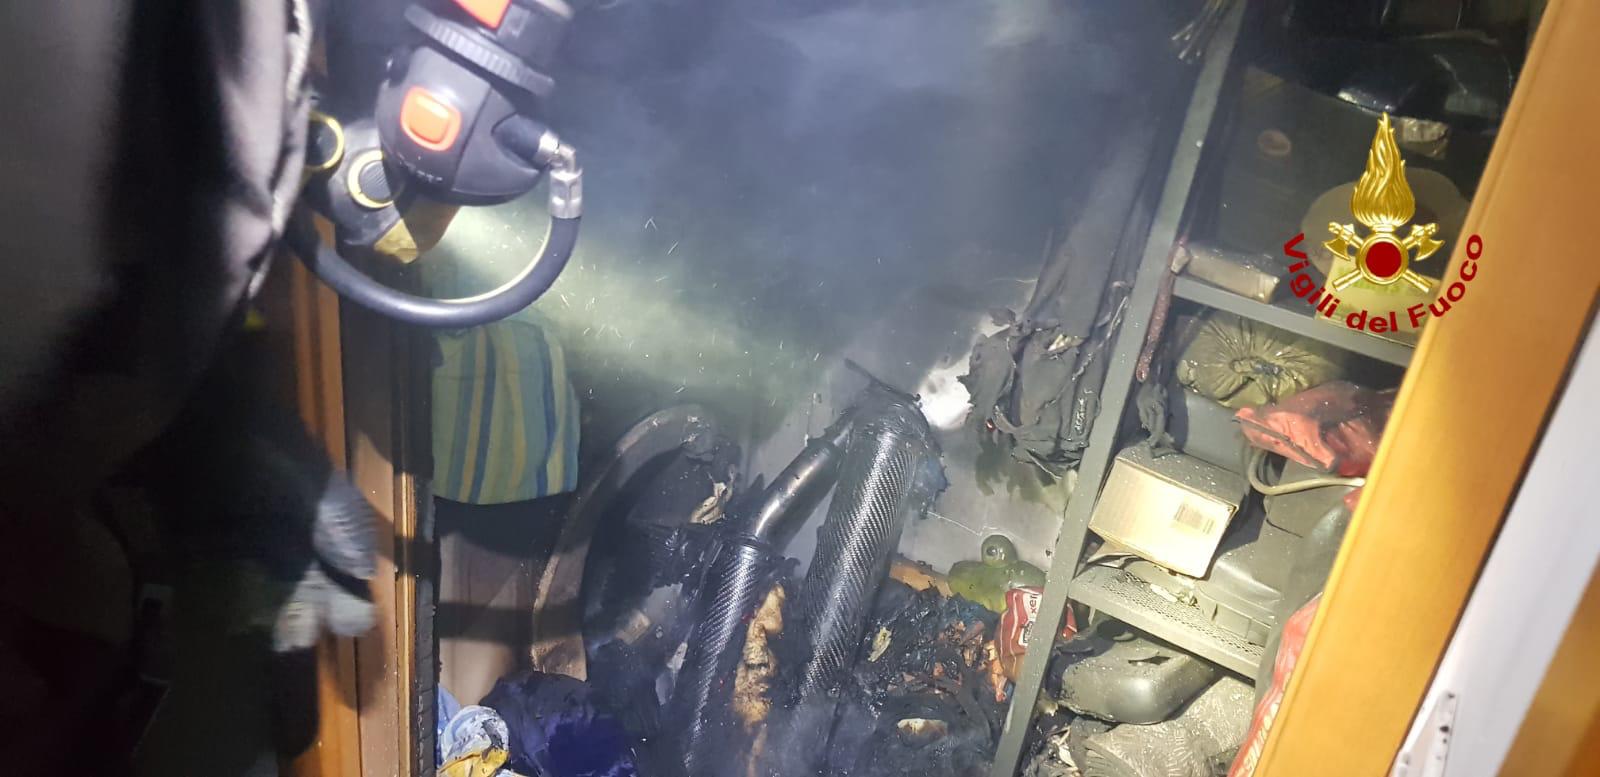 Lavatrice in fiamme per un corto circuito, paura nella notte a Floridia (FOTO)